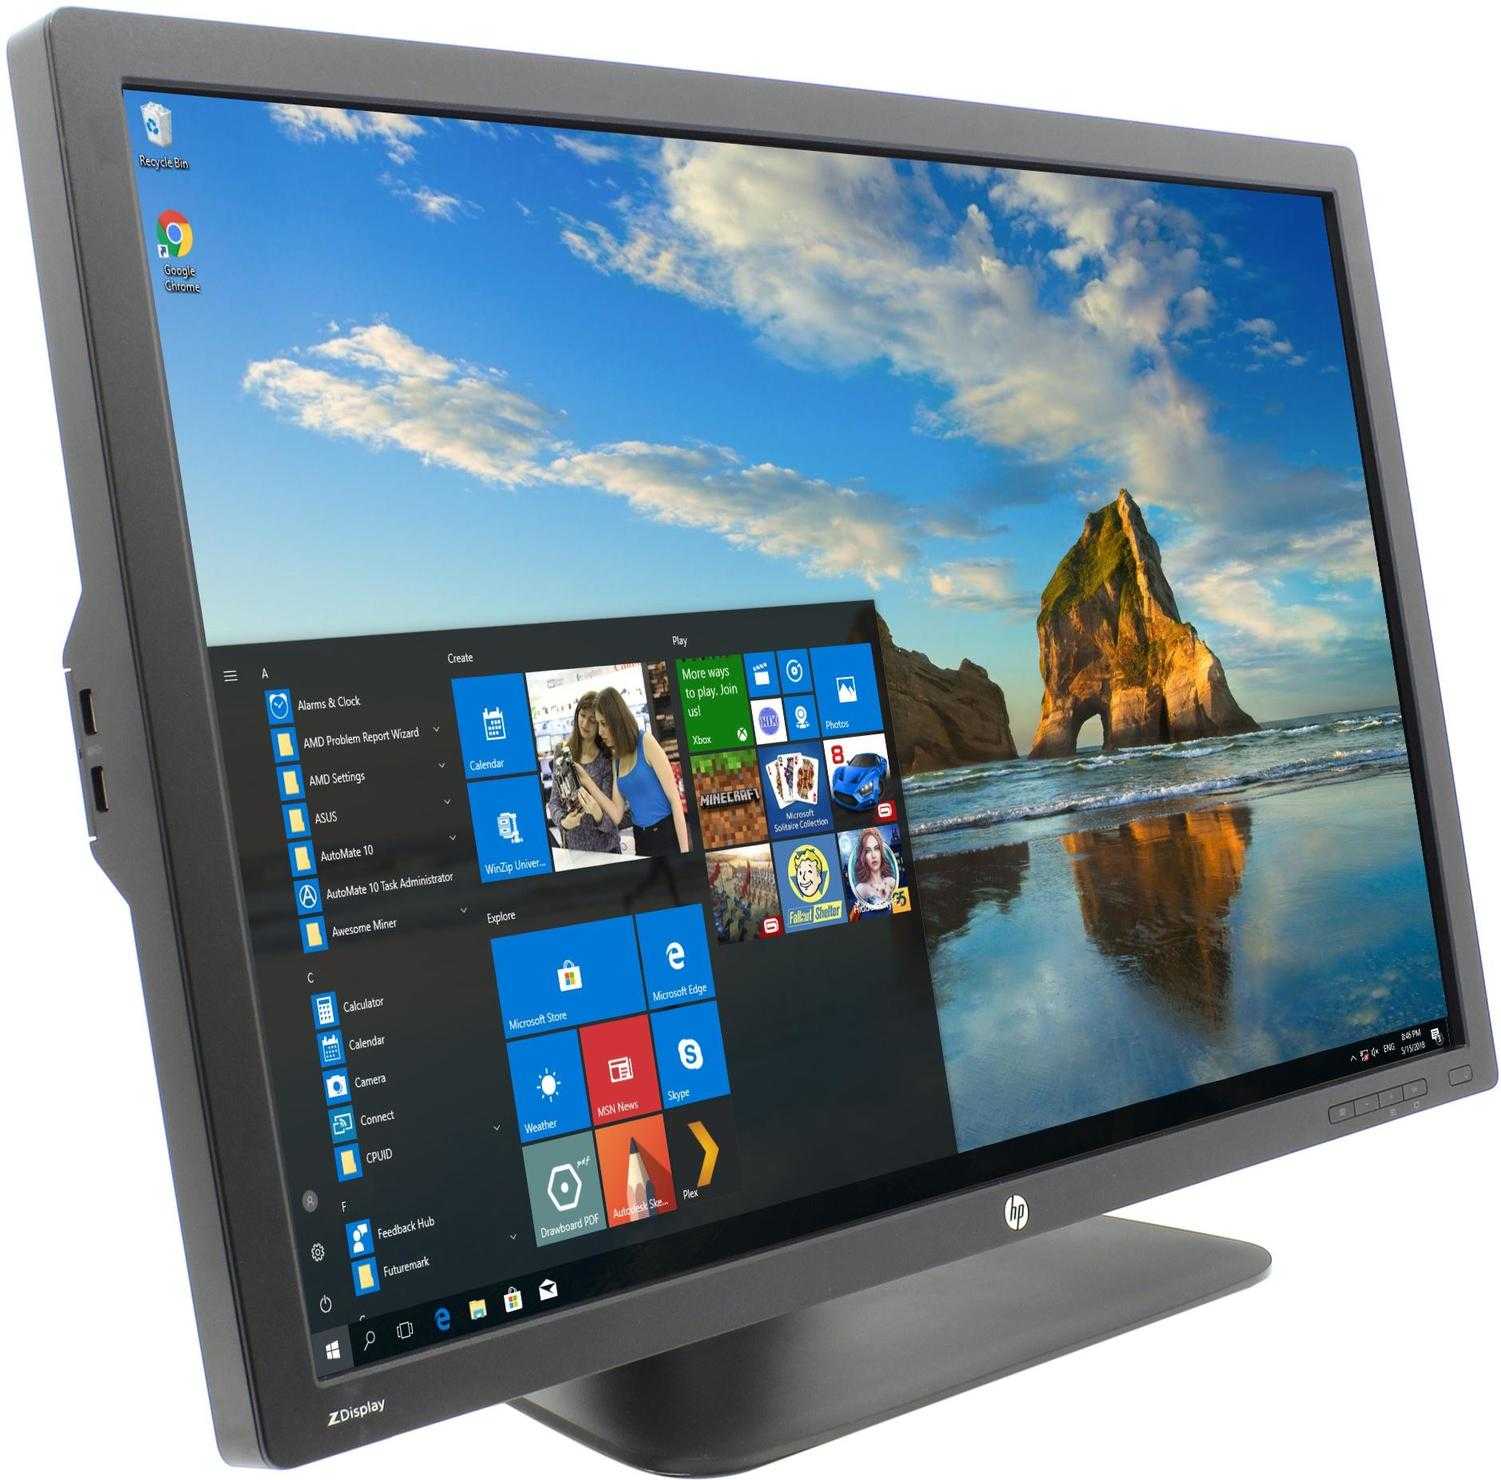 Монитор HP Z30i - подробные характеристики обзоры видео фото Цены в интернет-магазинах где можно купить монитор HP Z30i